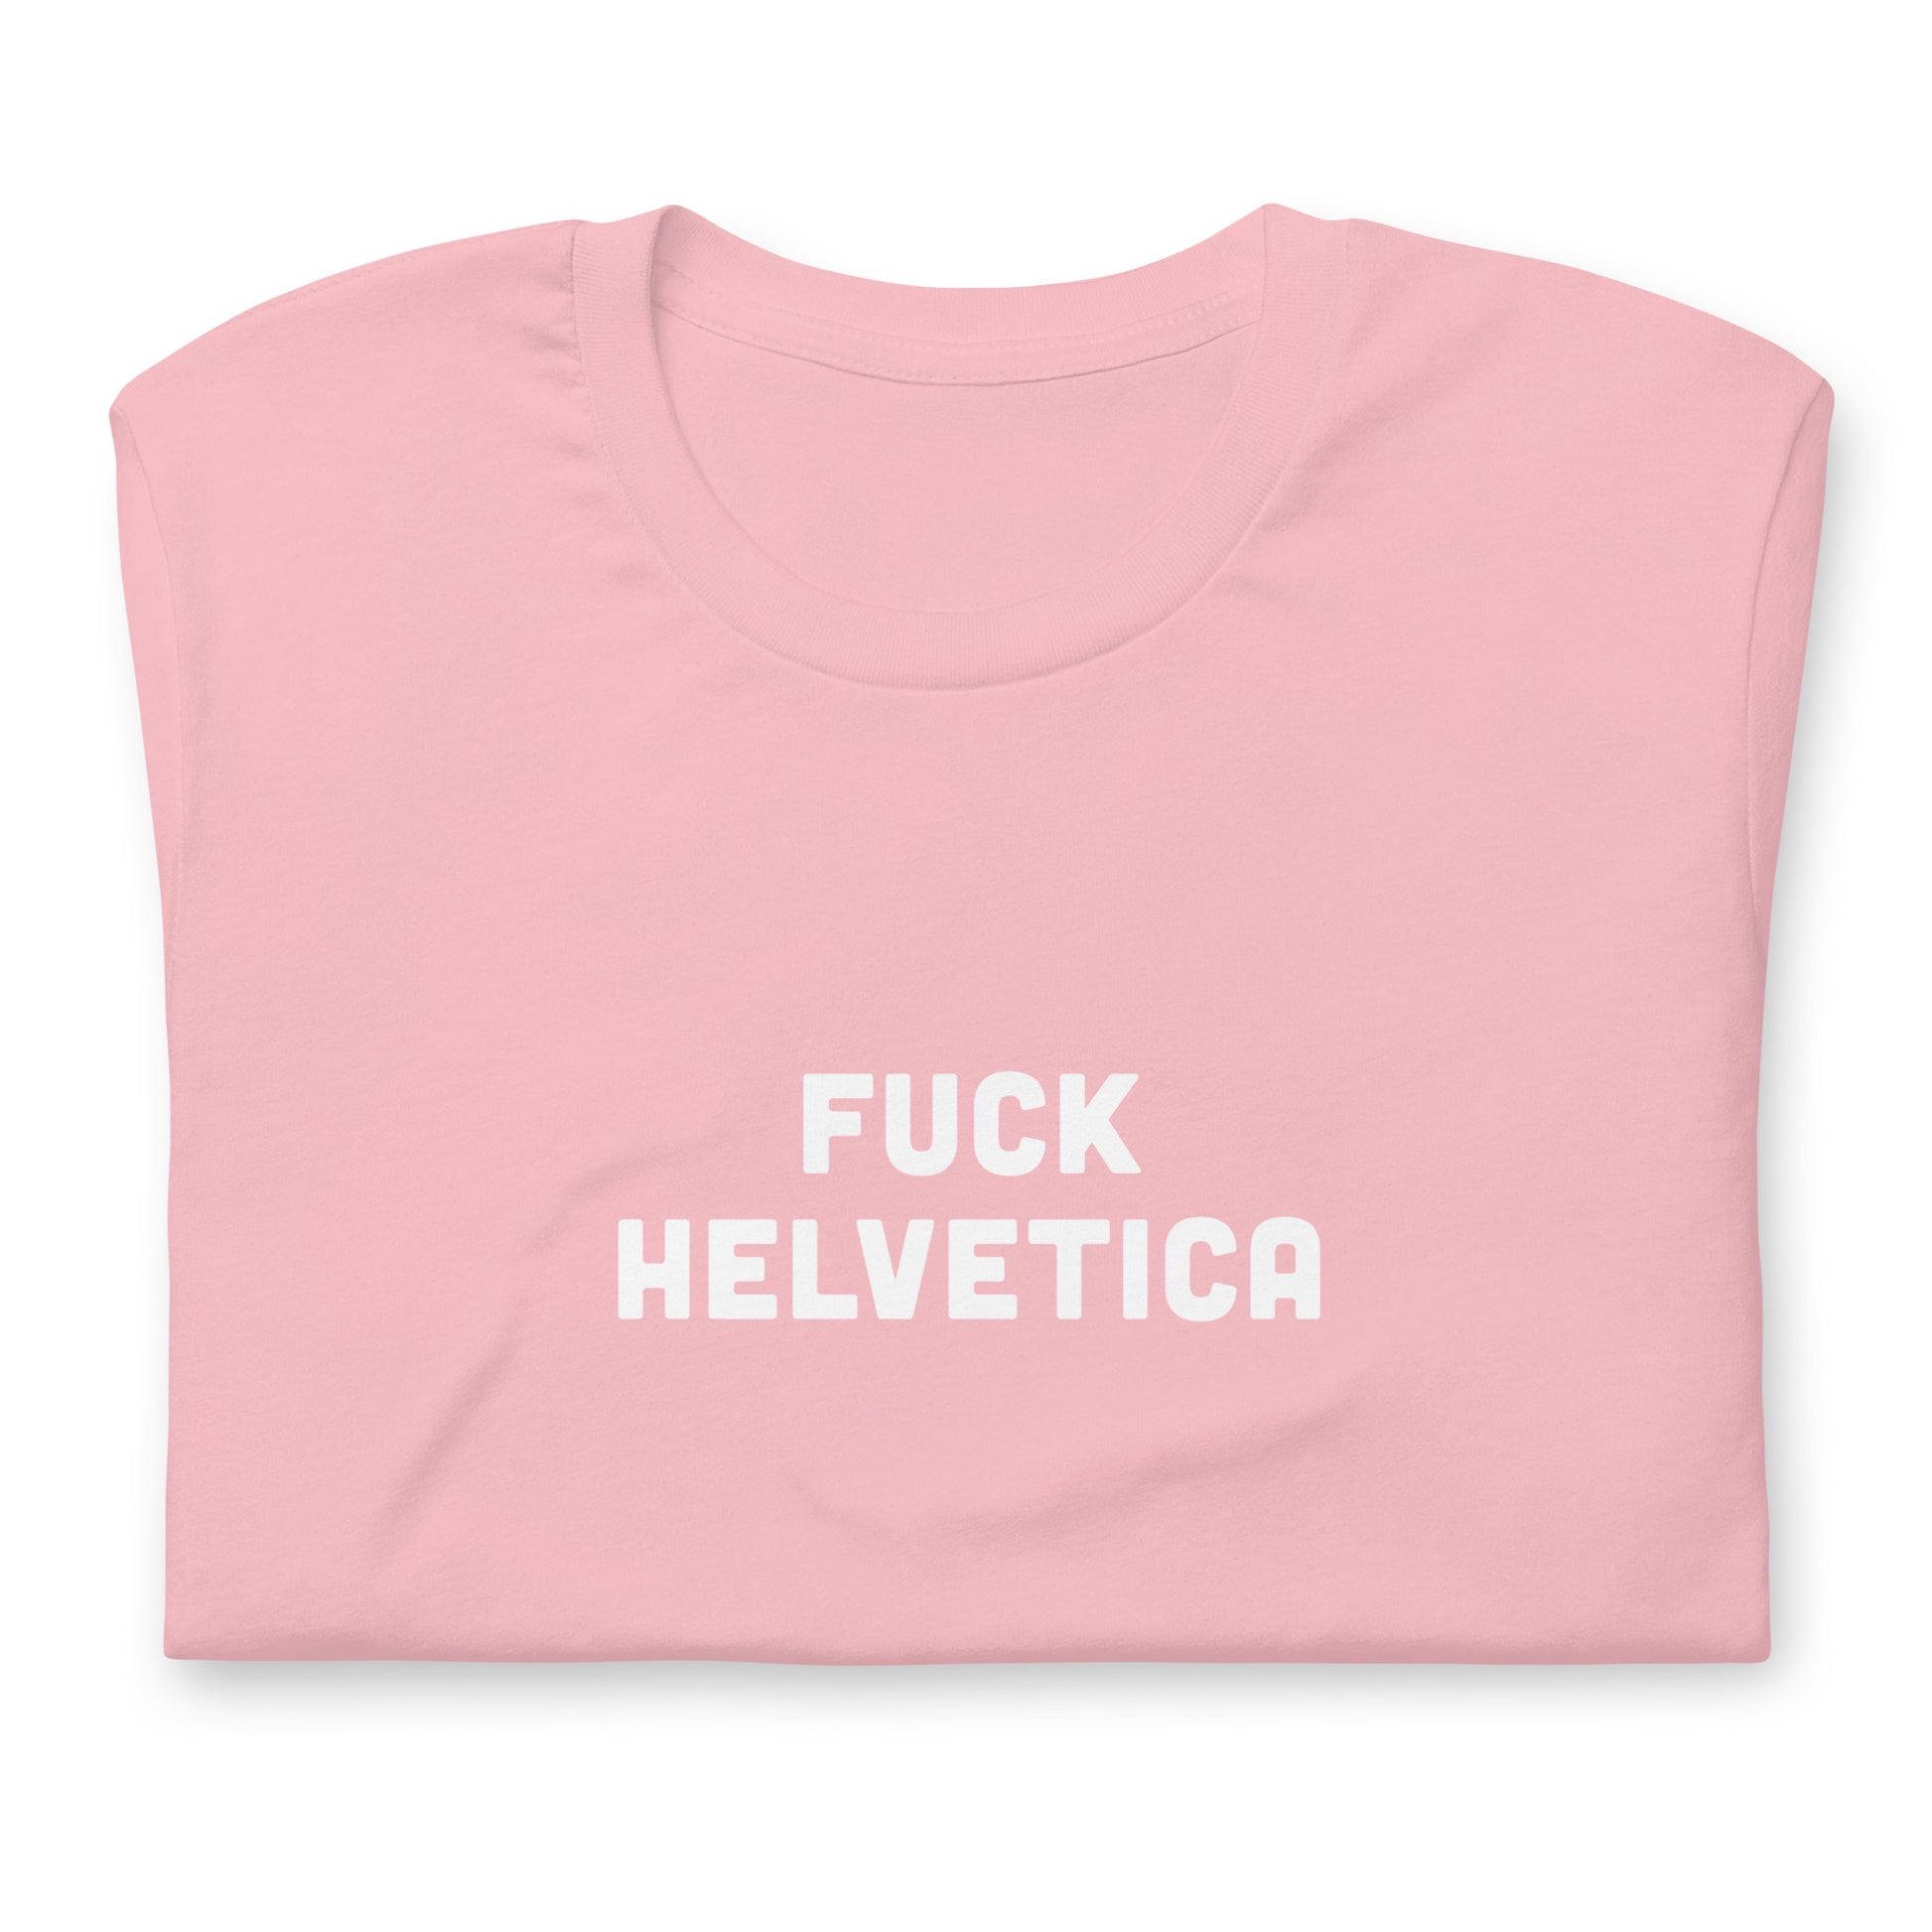 Fuck Helvetica T-Shirt Size S Color Asphalt